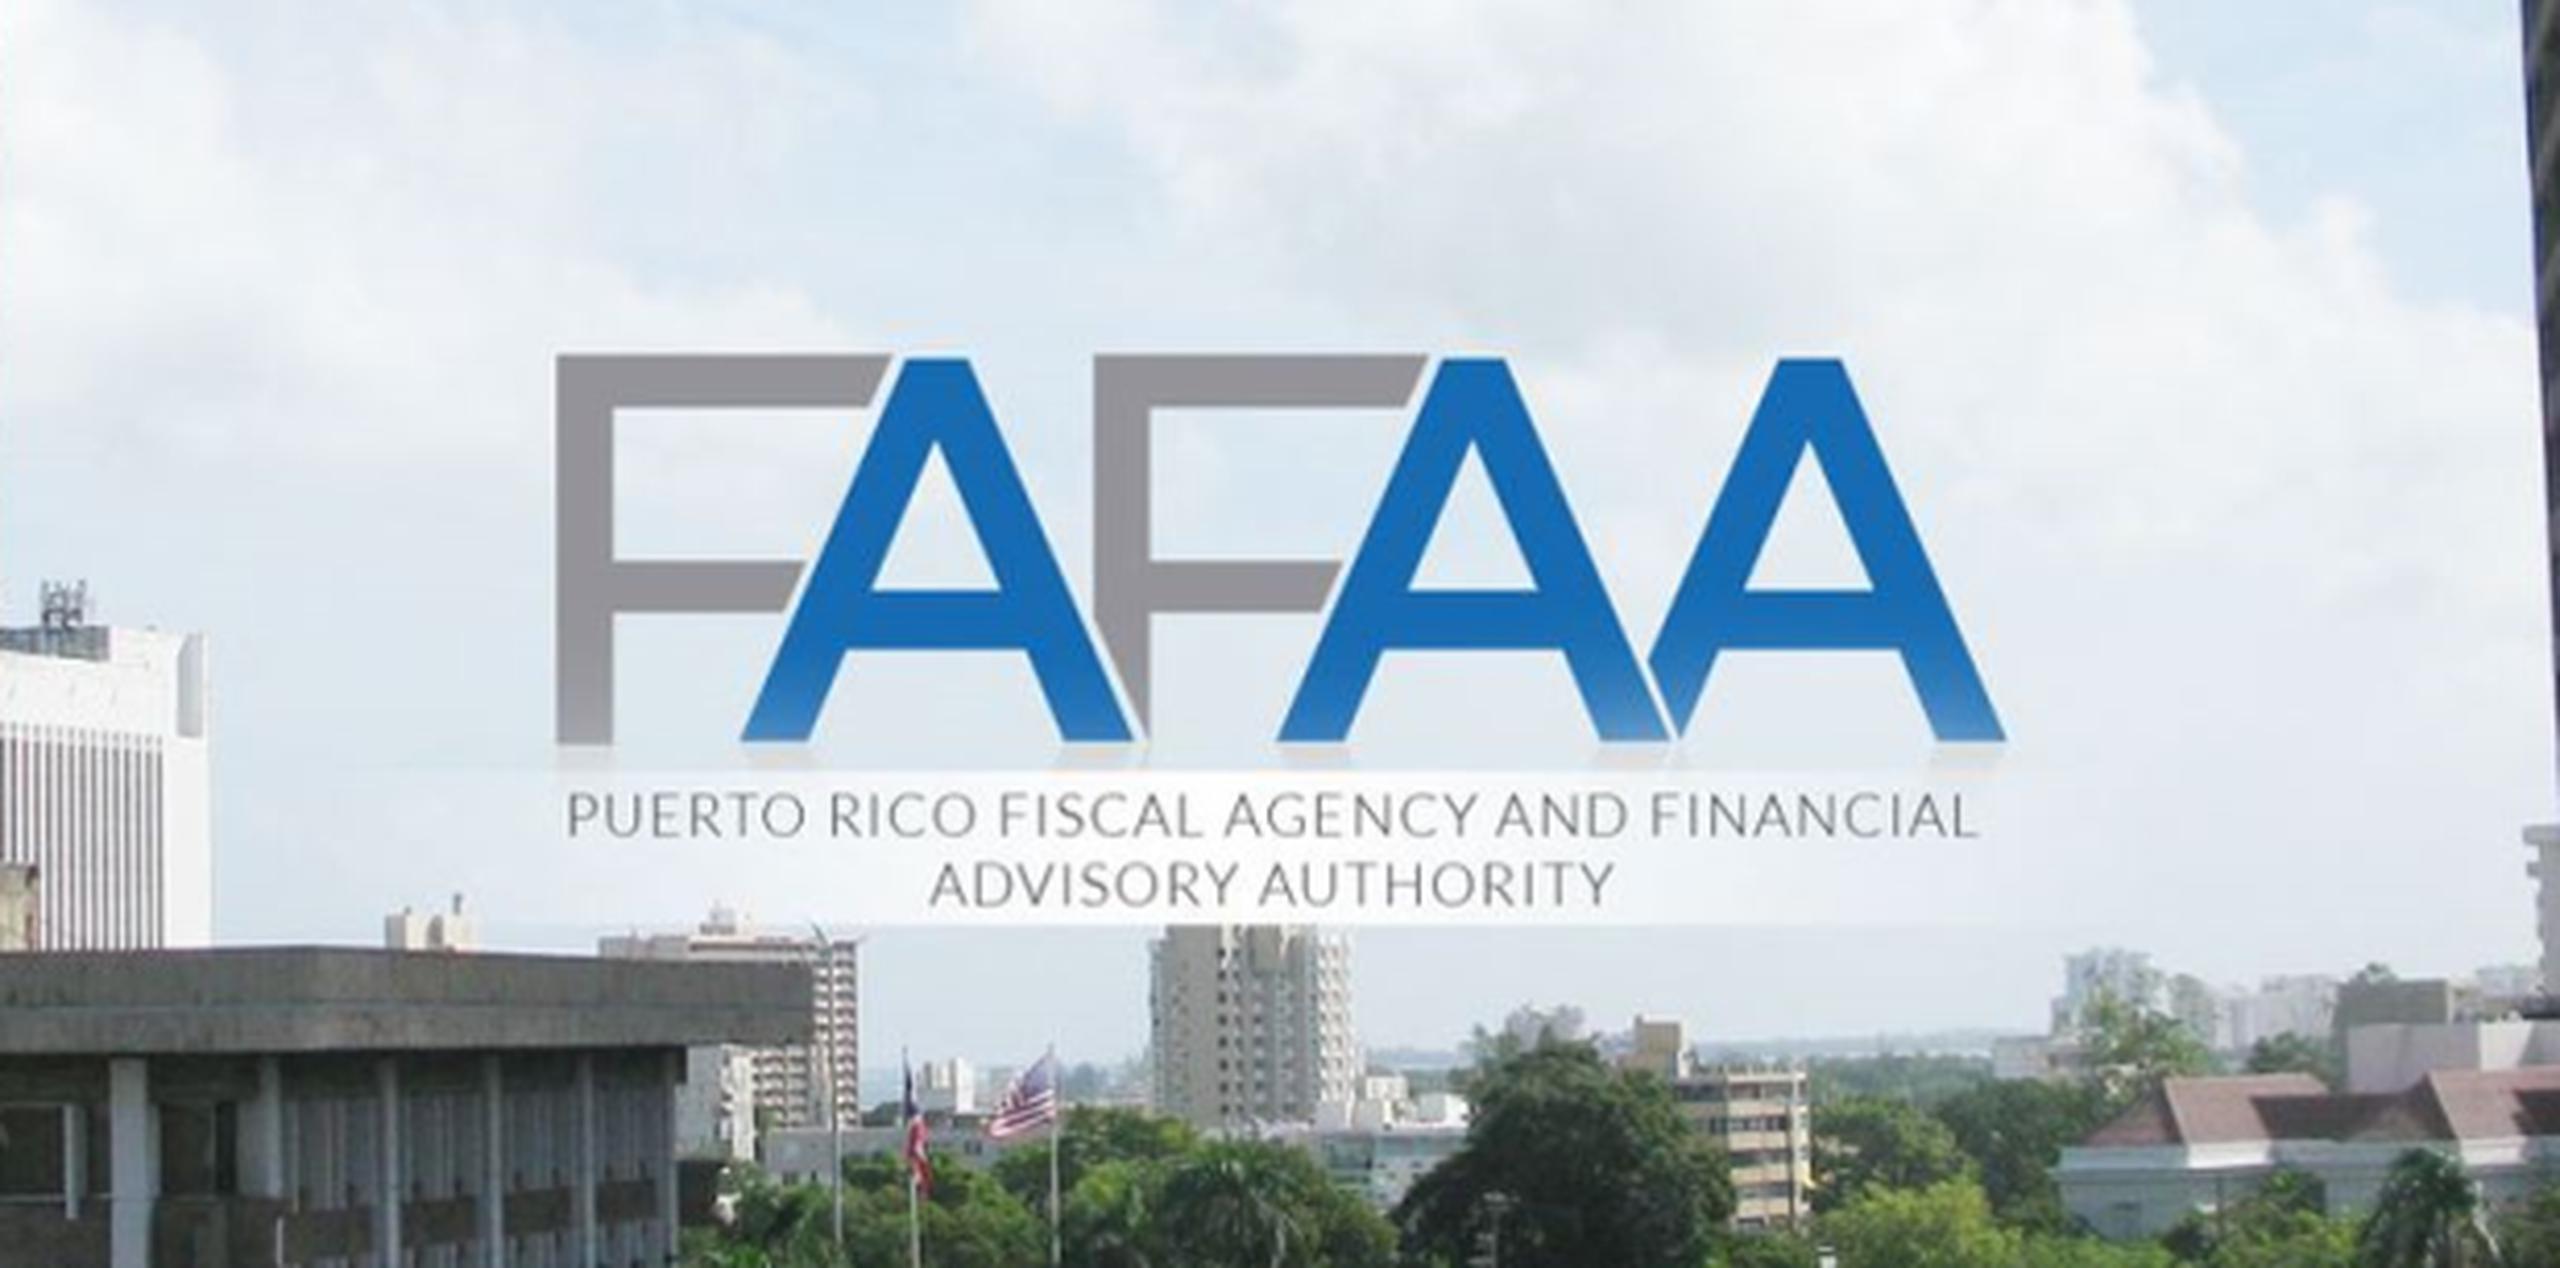 Los documentos están disponibles en el portal electrónico de la AAFAF. (Captura)